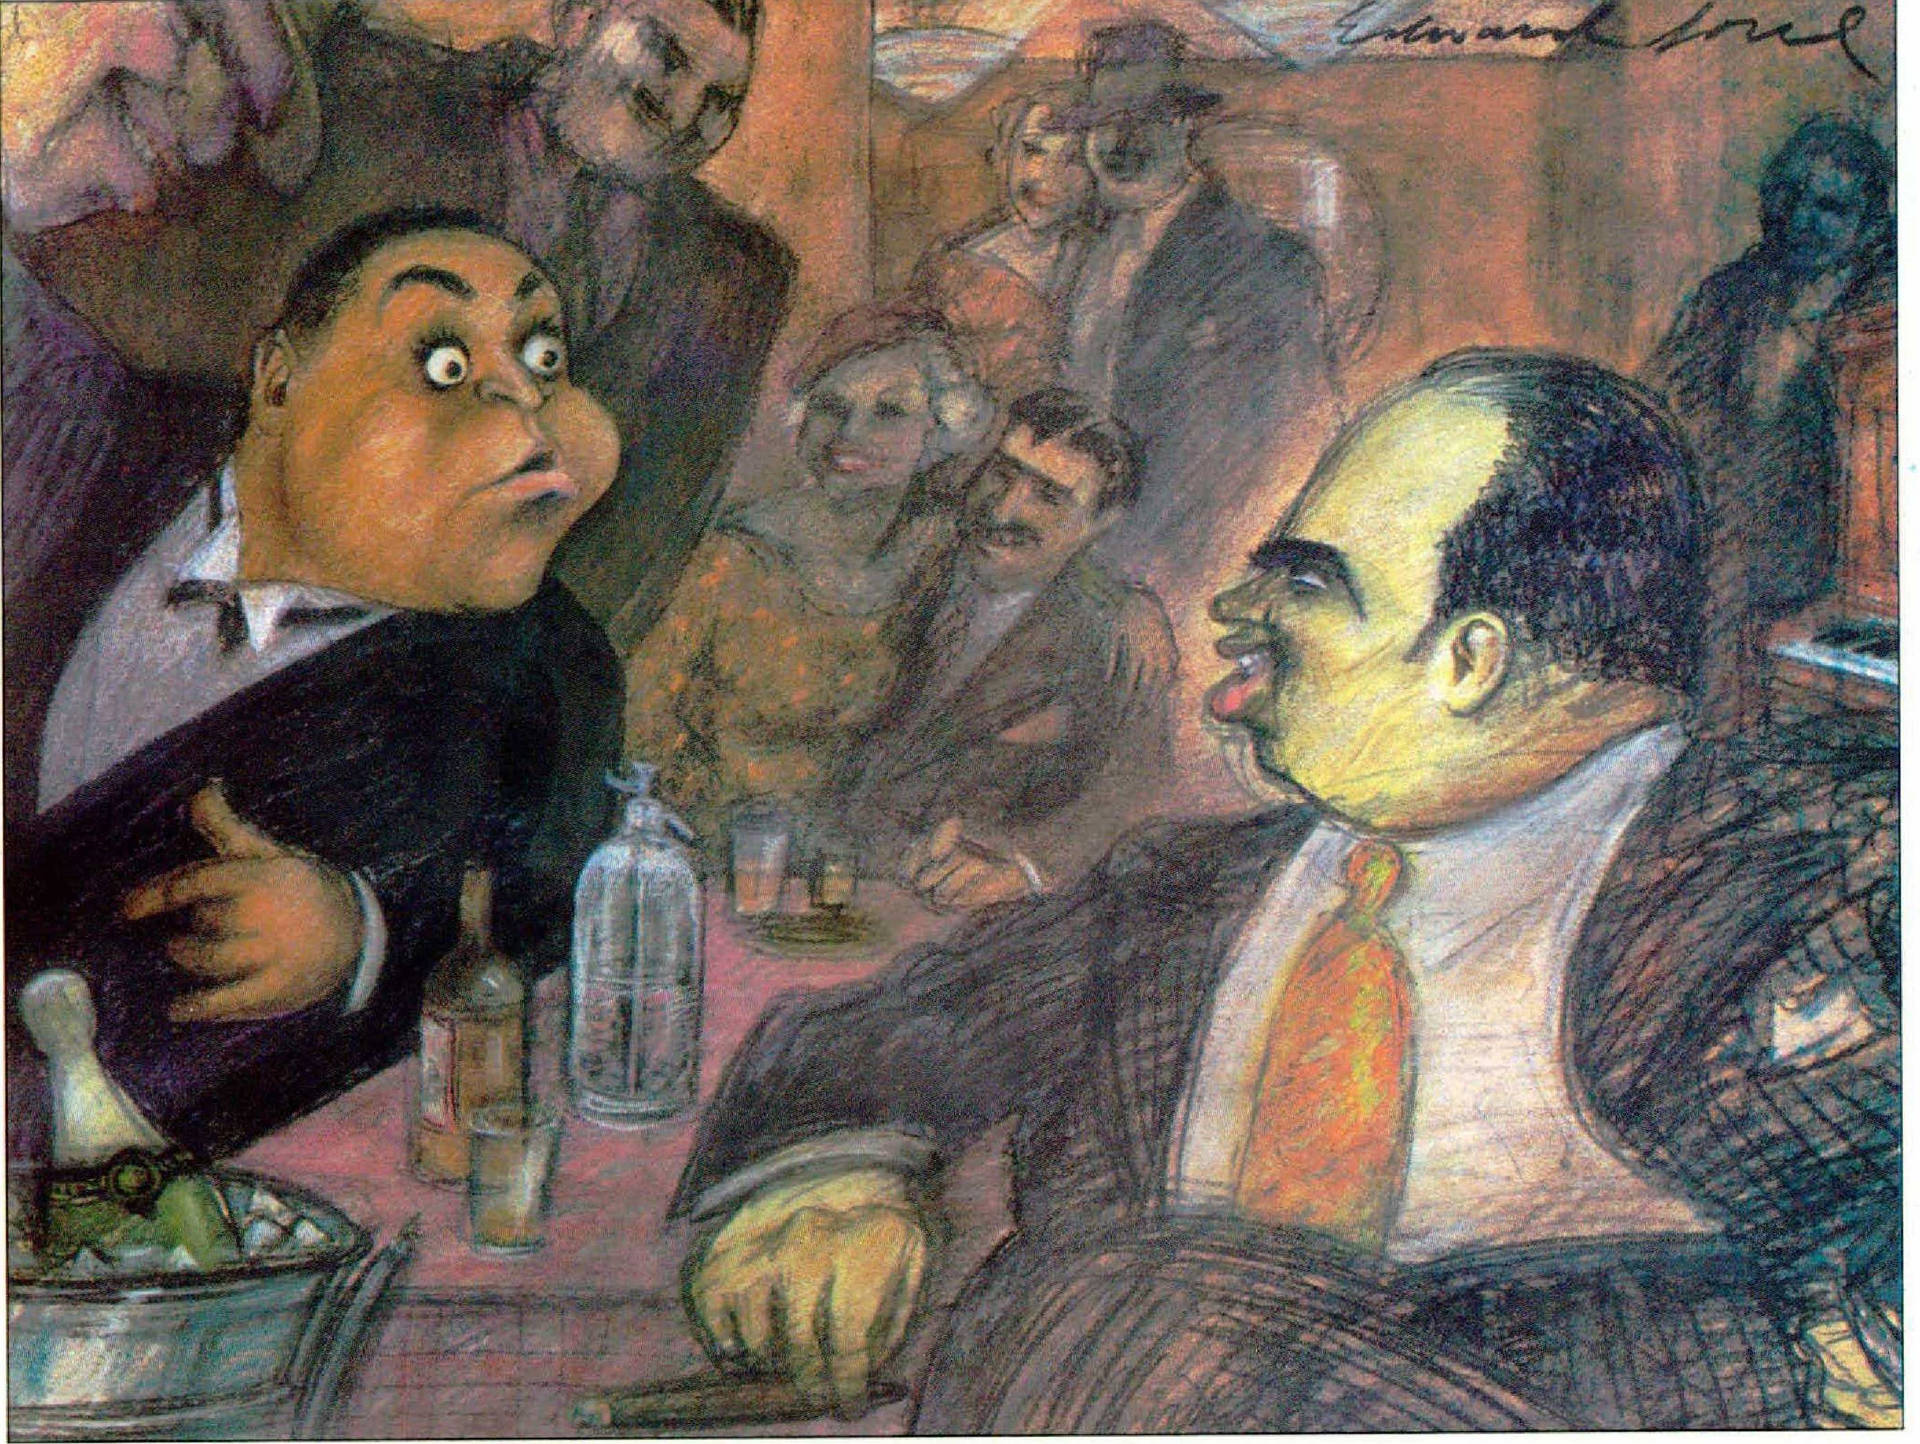 Maleri af Fats Waller og Al Capone Wallpaper